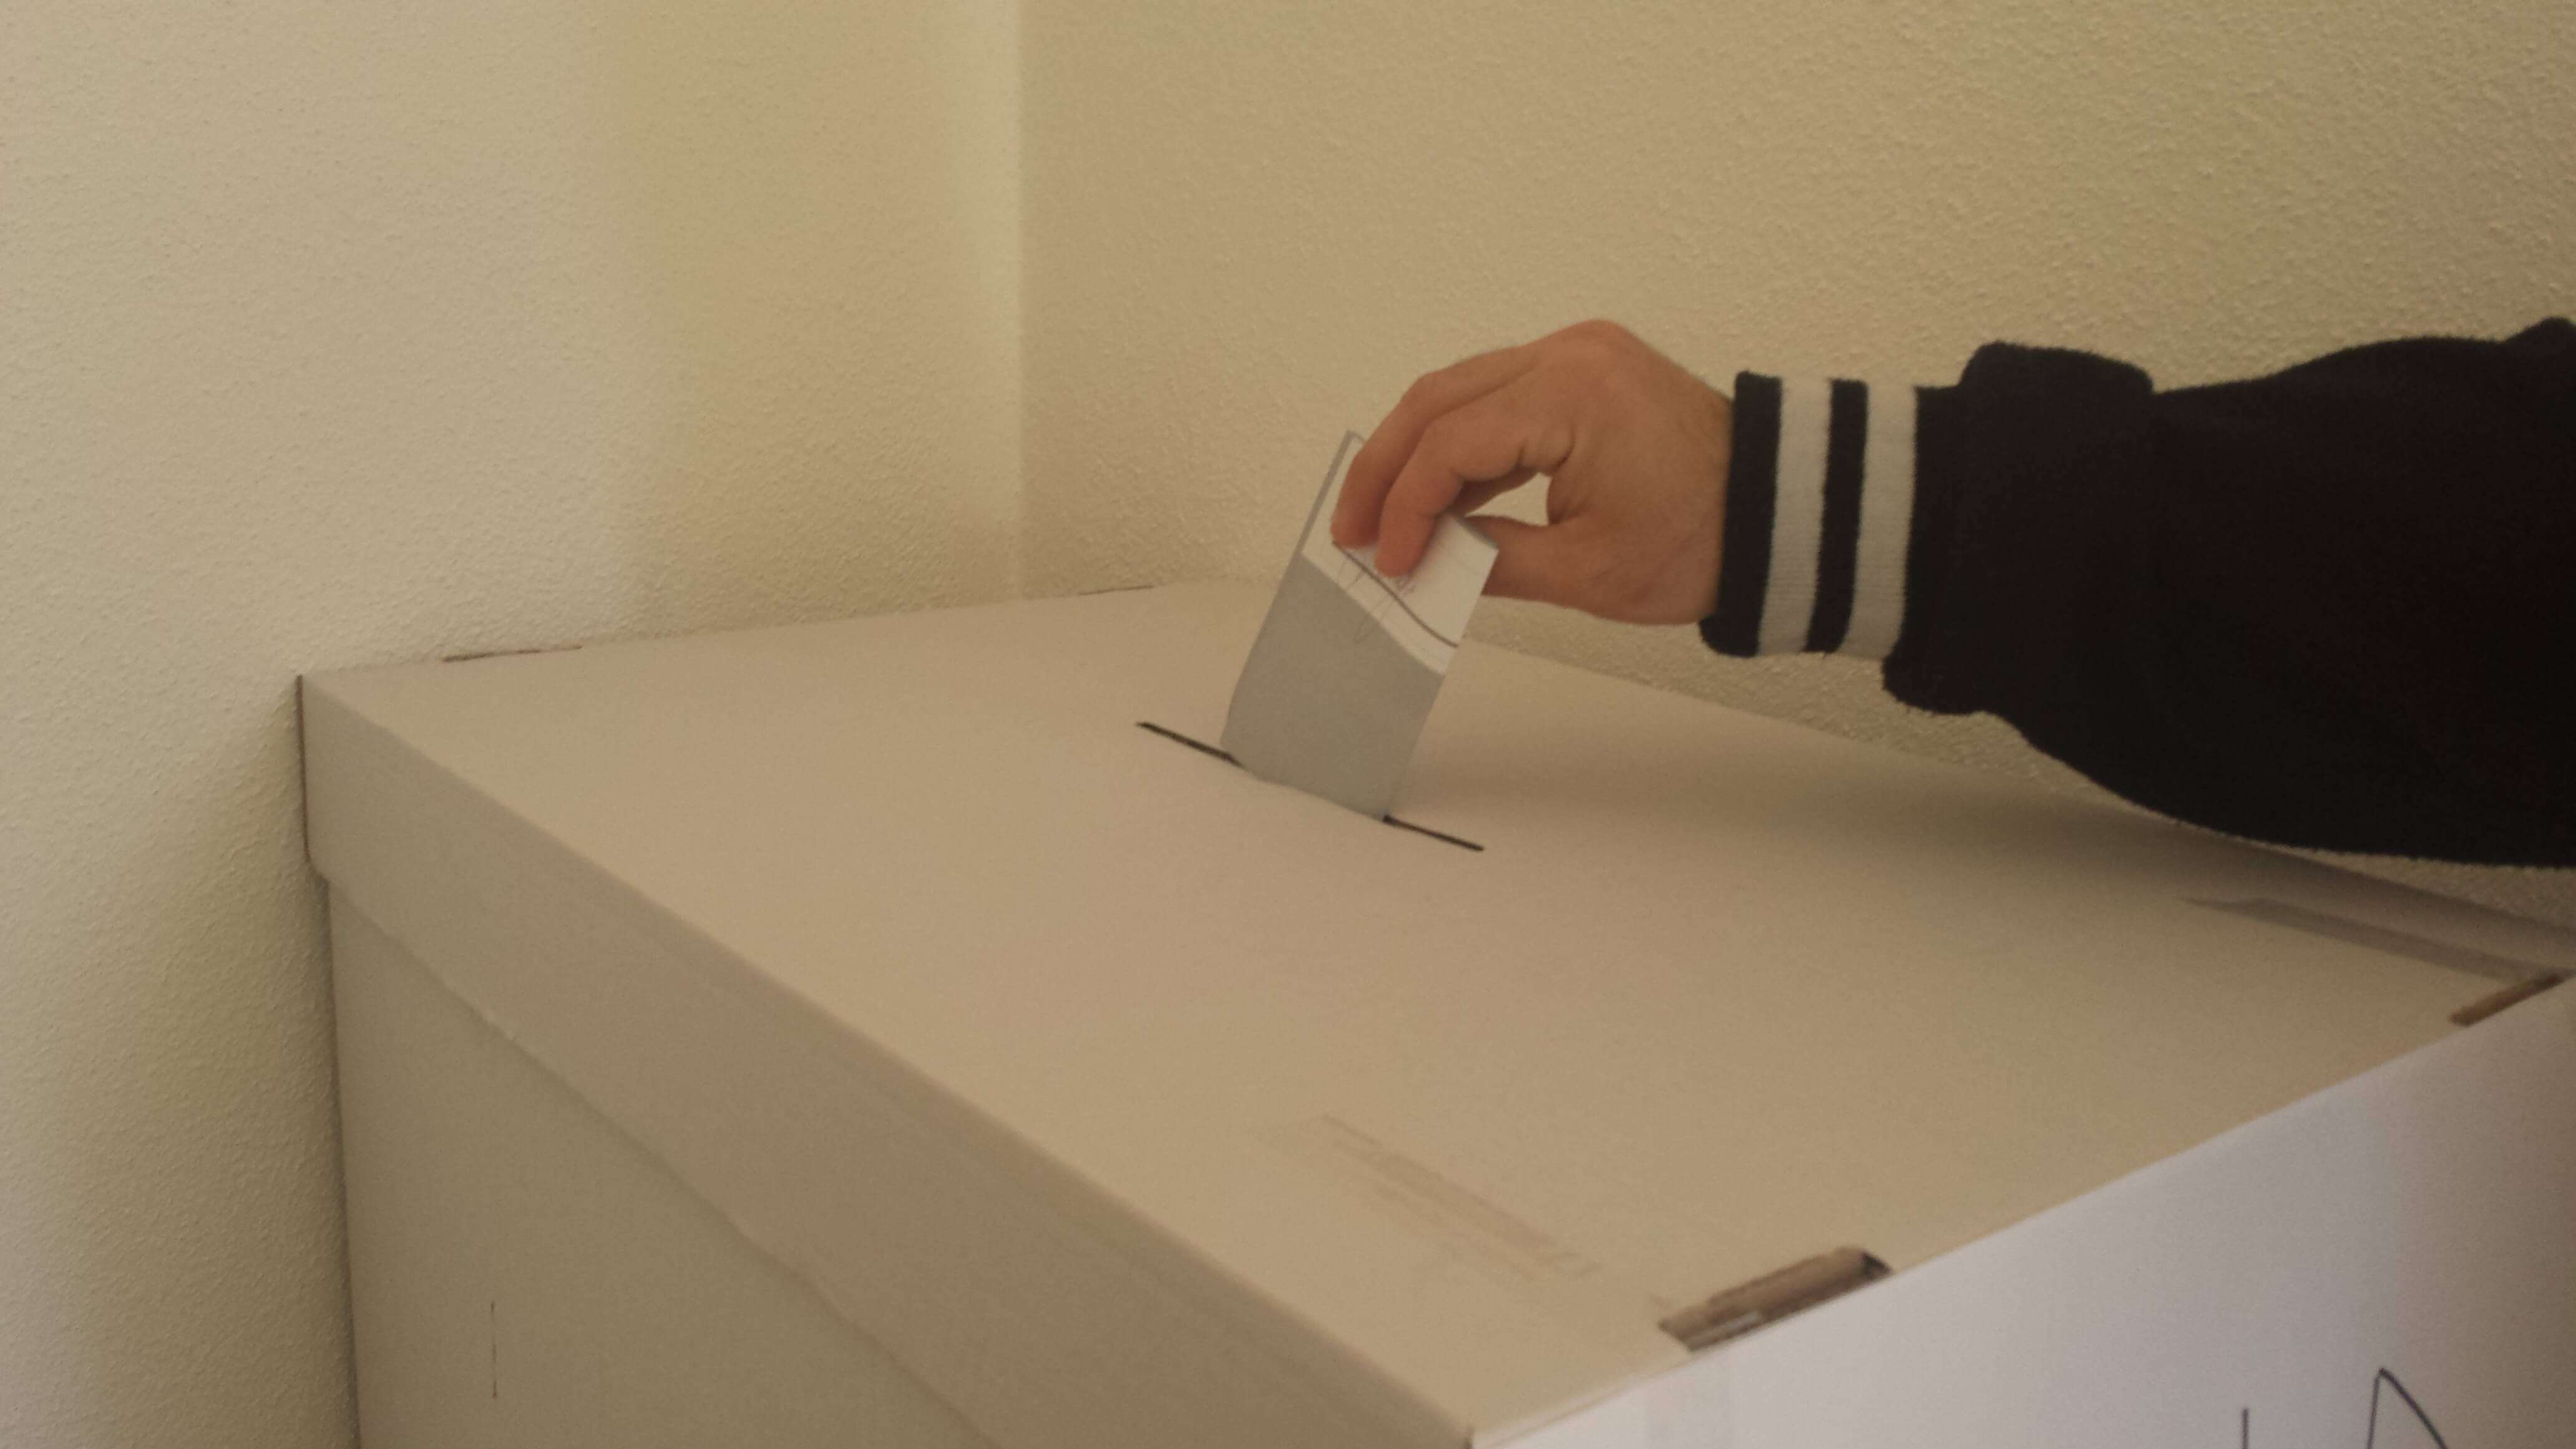 Sardegna: a giugno le nuove elezioni amministrative